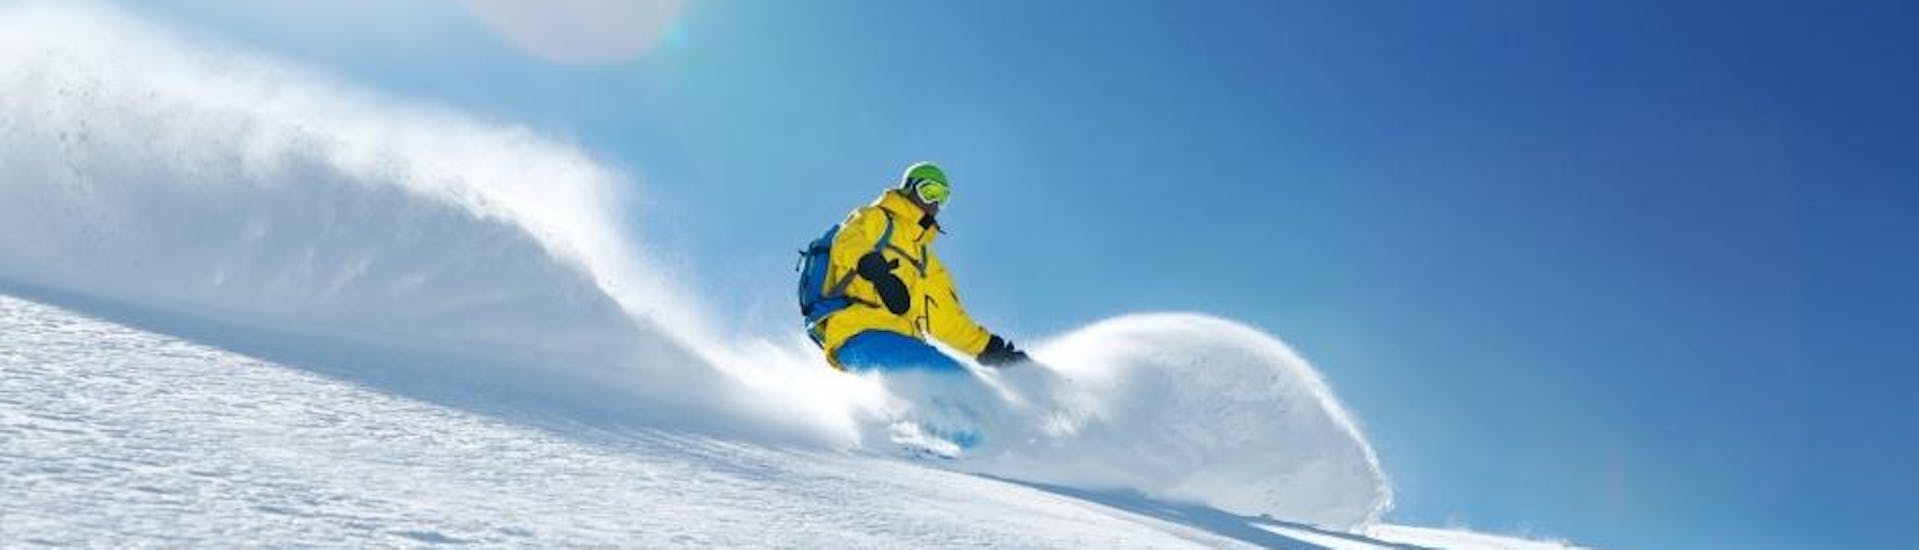 Lezioni di Snowboard a partire da 15 anni per tutti i livelli con Skischule Toni Gruber.